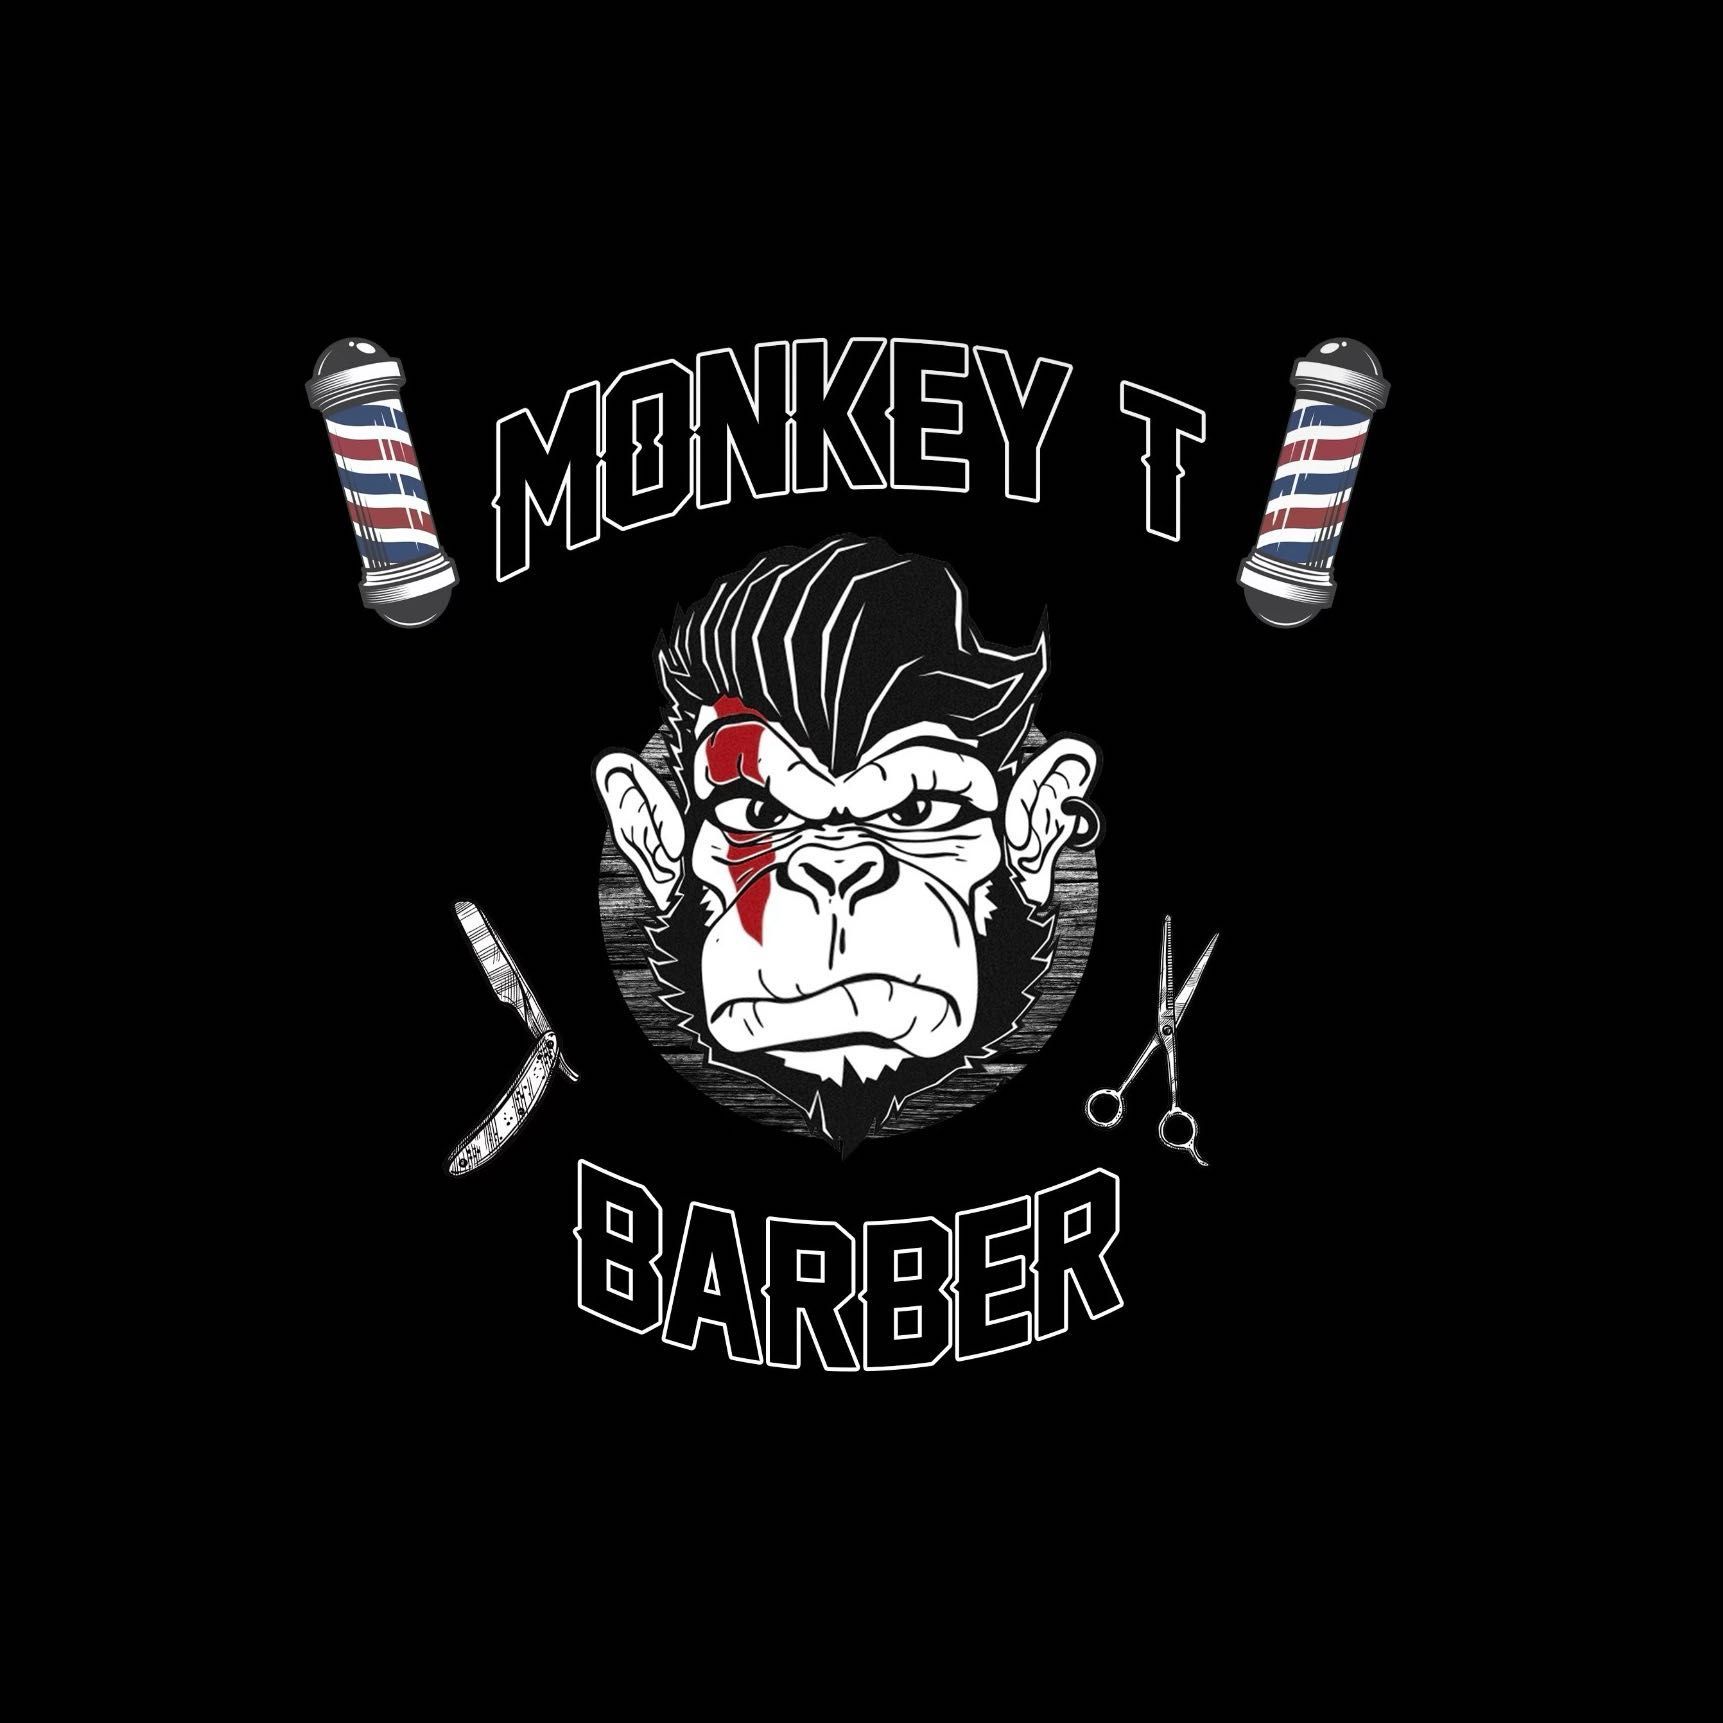 Monkey T Barber, 5288 Baltimore Dr, La Mesa, 91942